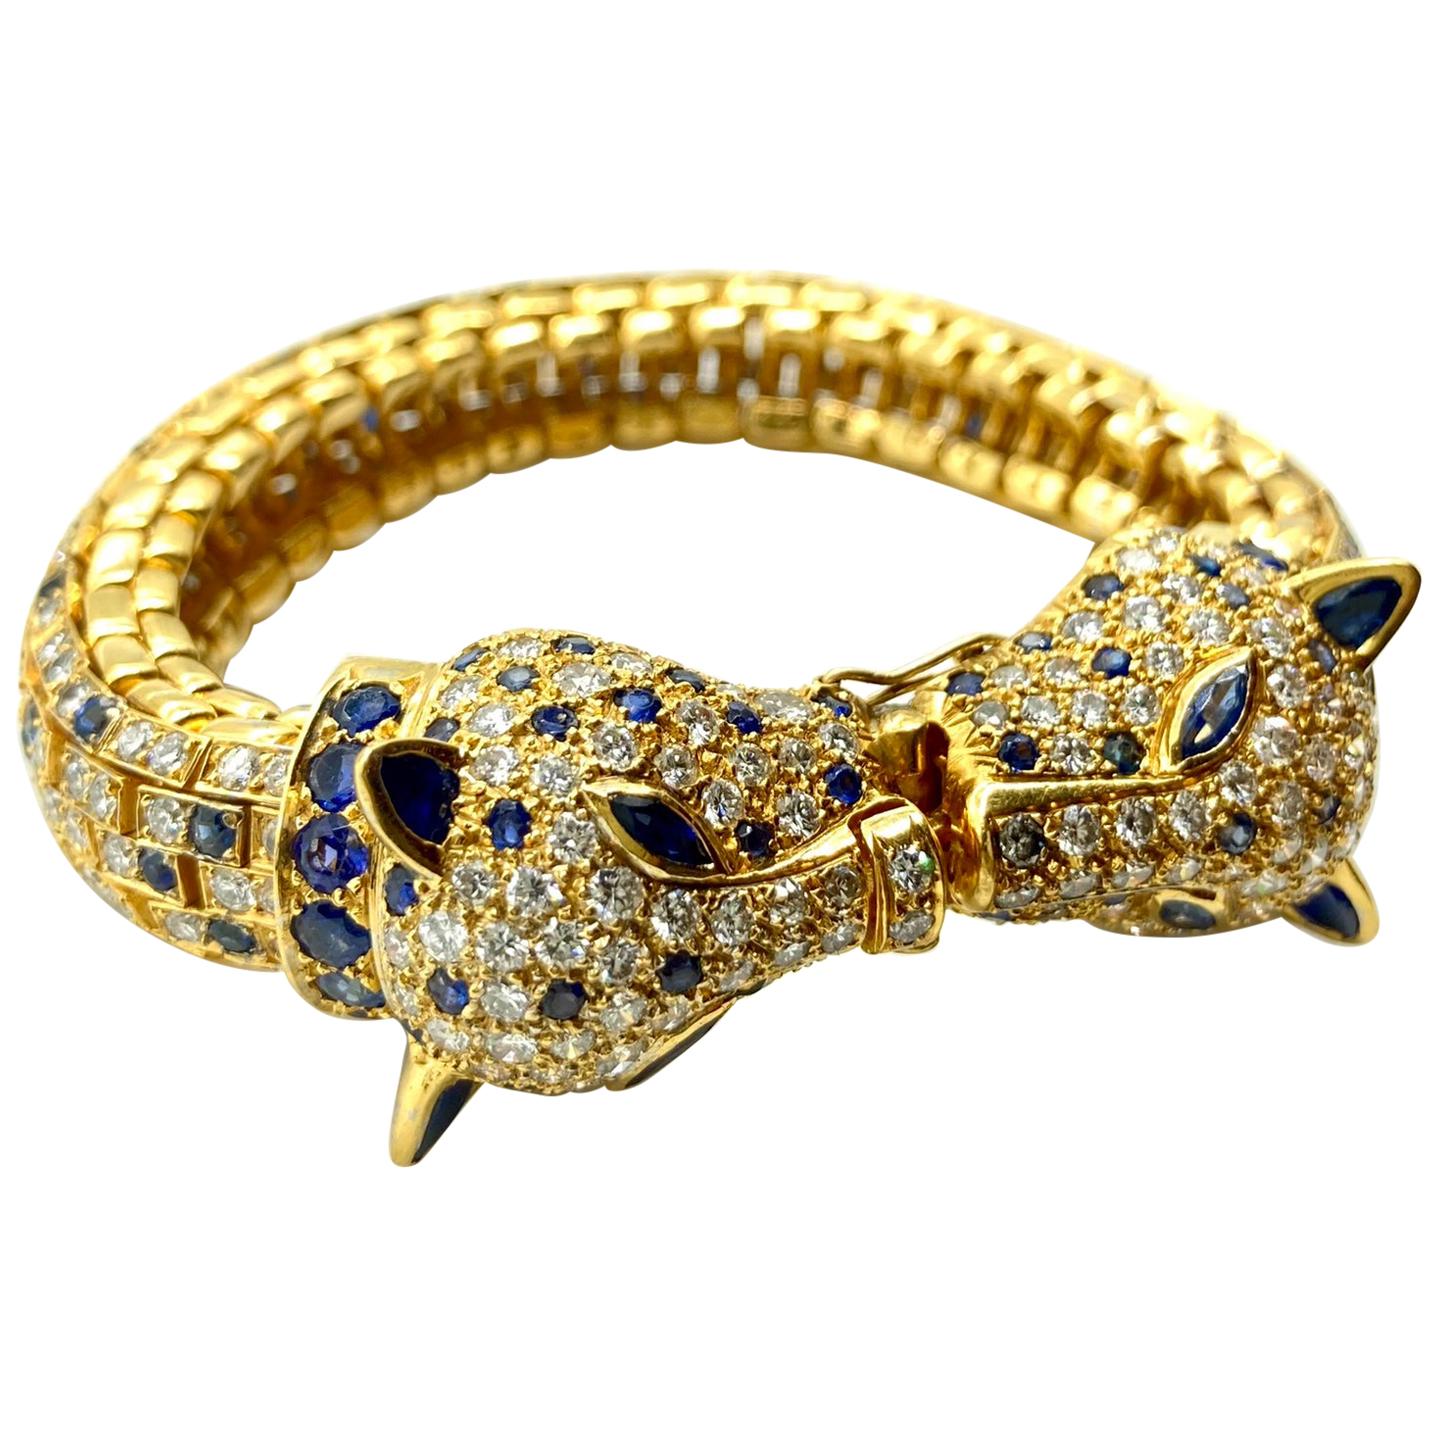 Geparden-Armband mit Saphiren und Diamanten aus Gelbgold